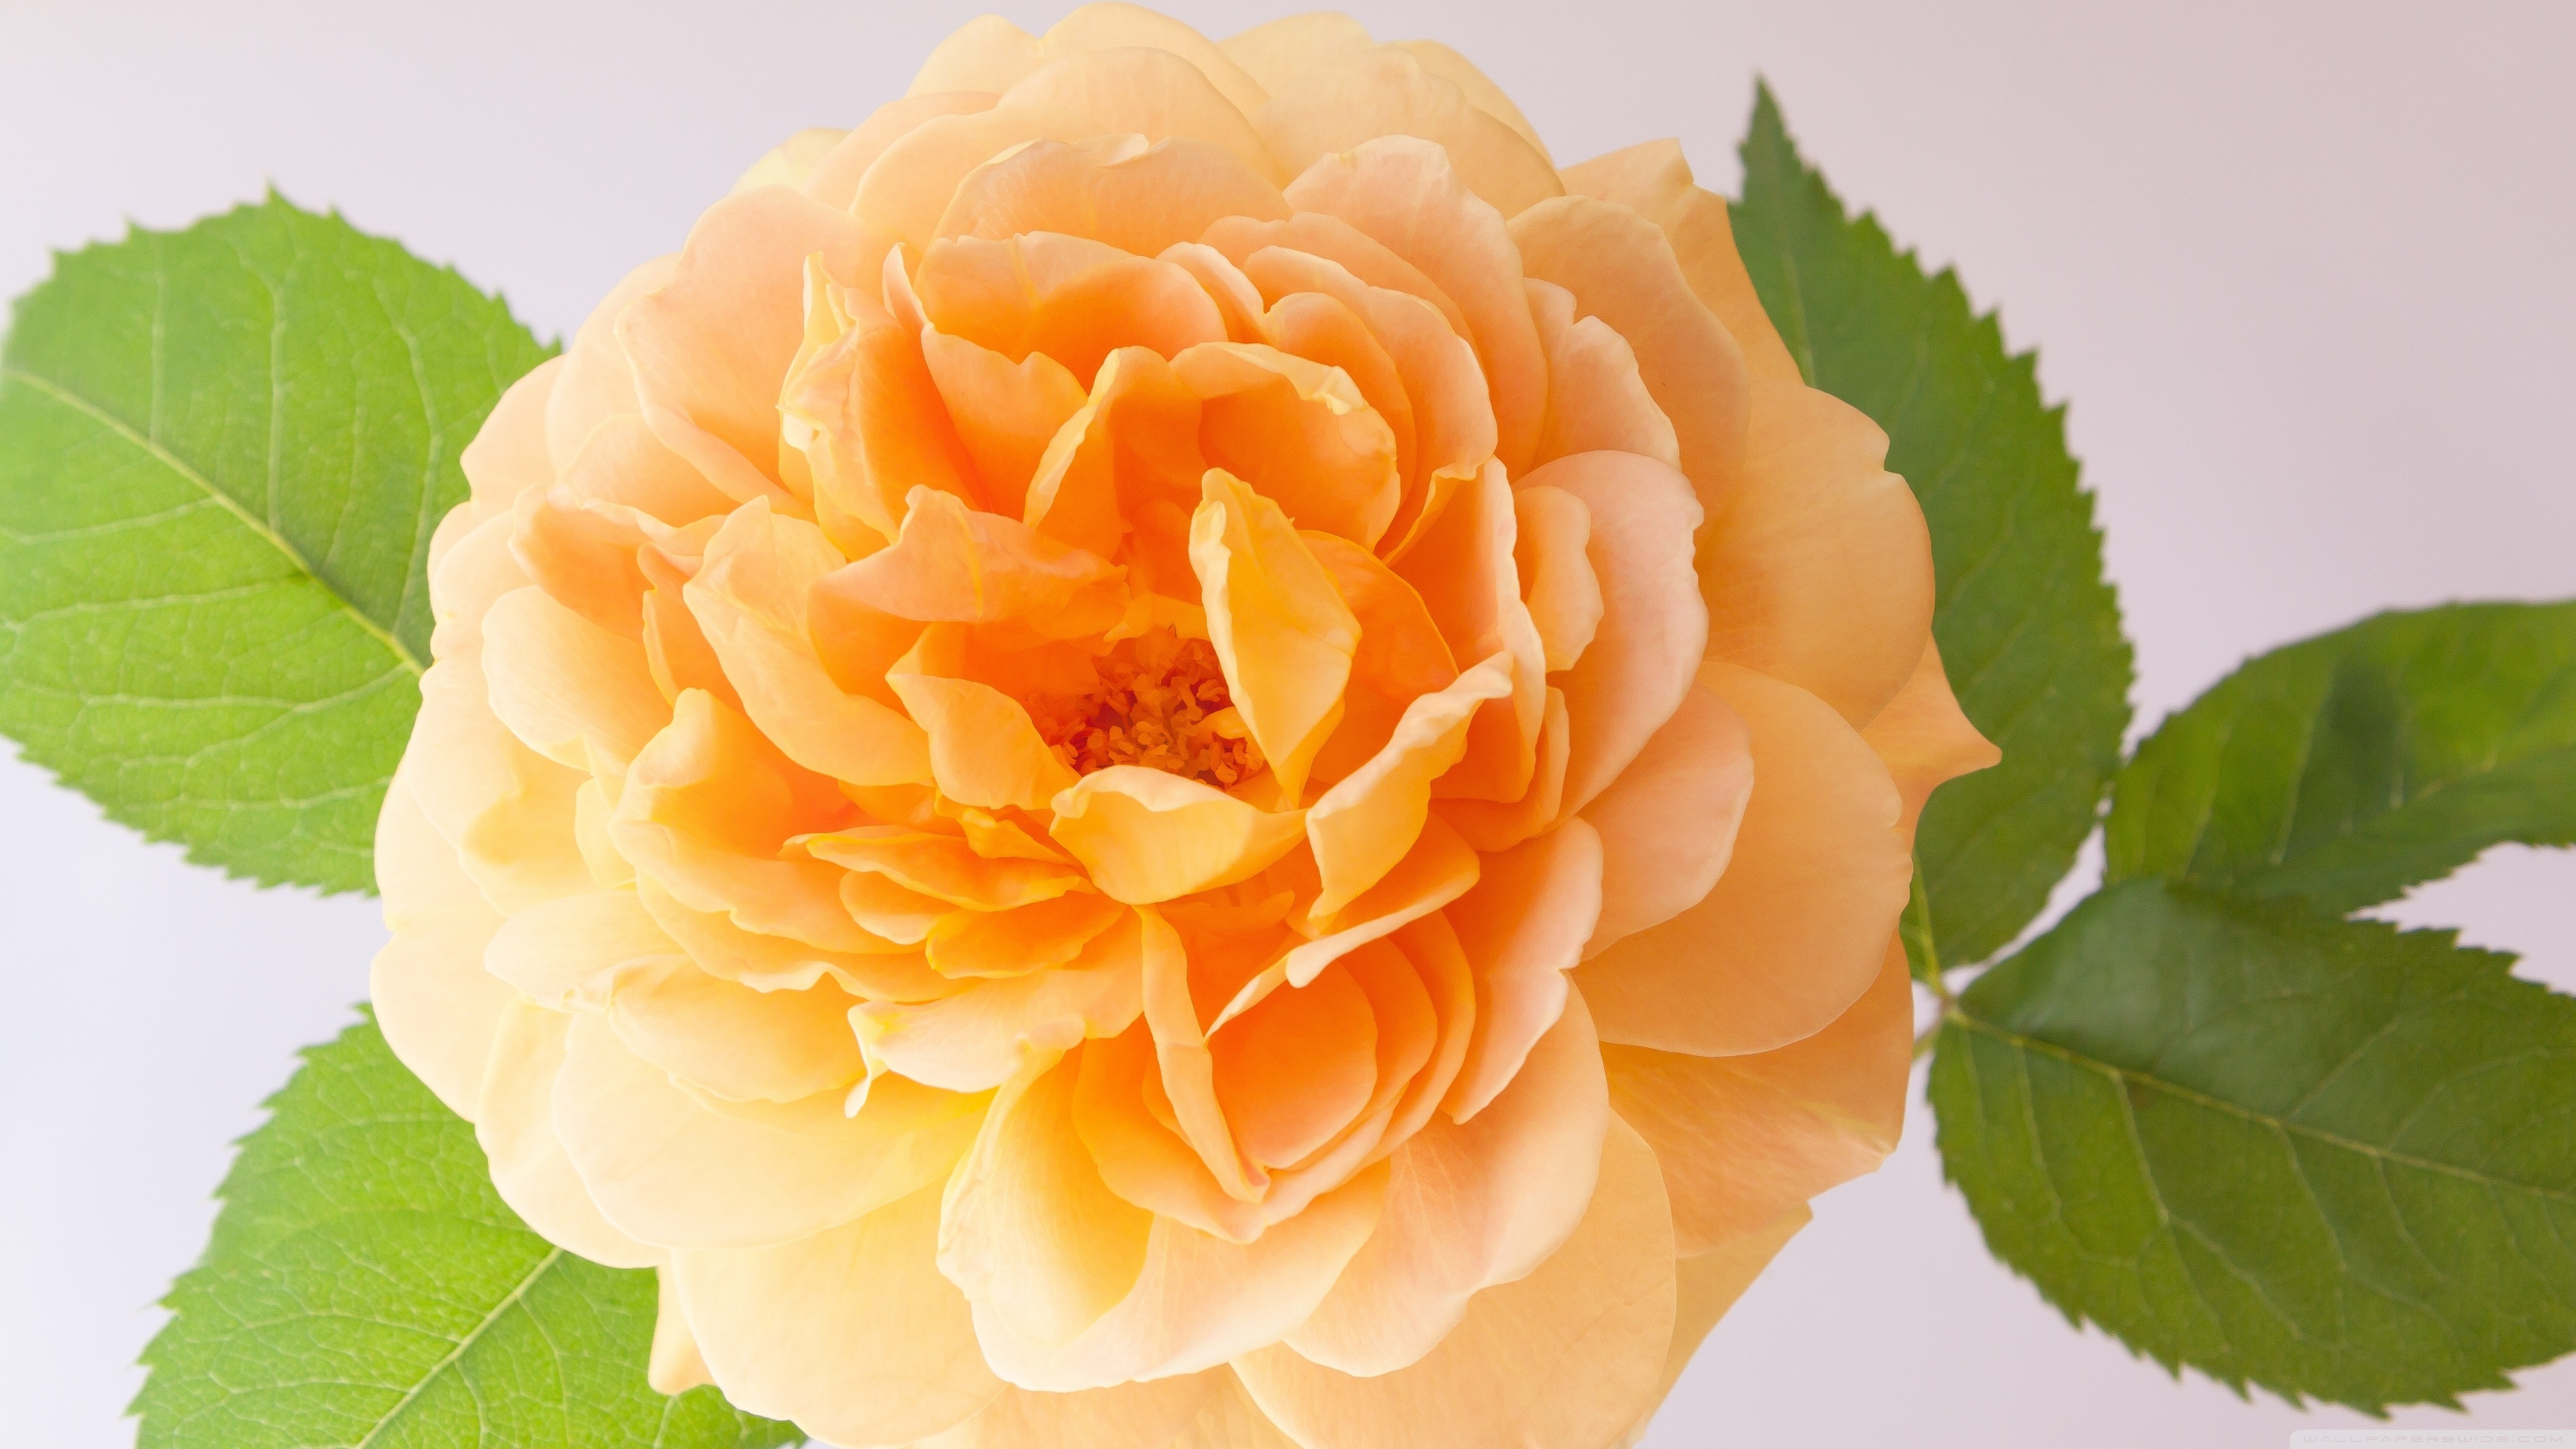 Orange Rose ❤ 4K HD Desktop Wallpaper for 4K Ultra HD TV • Wide